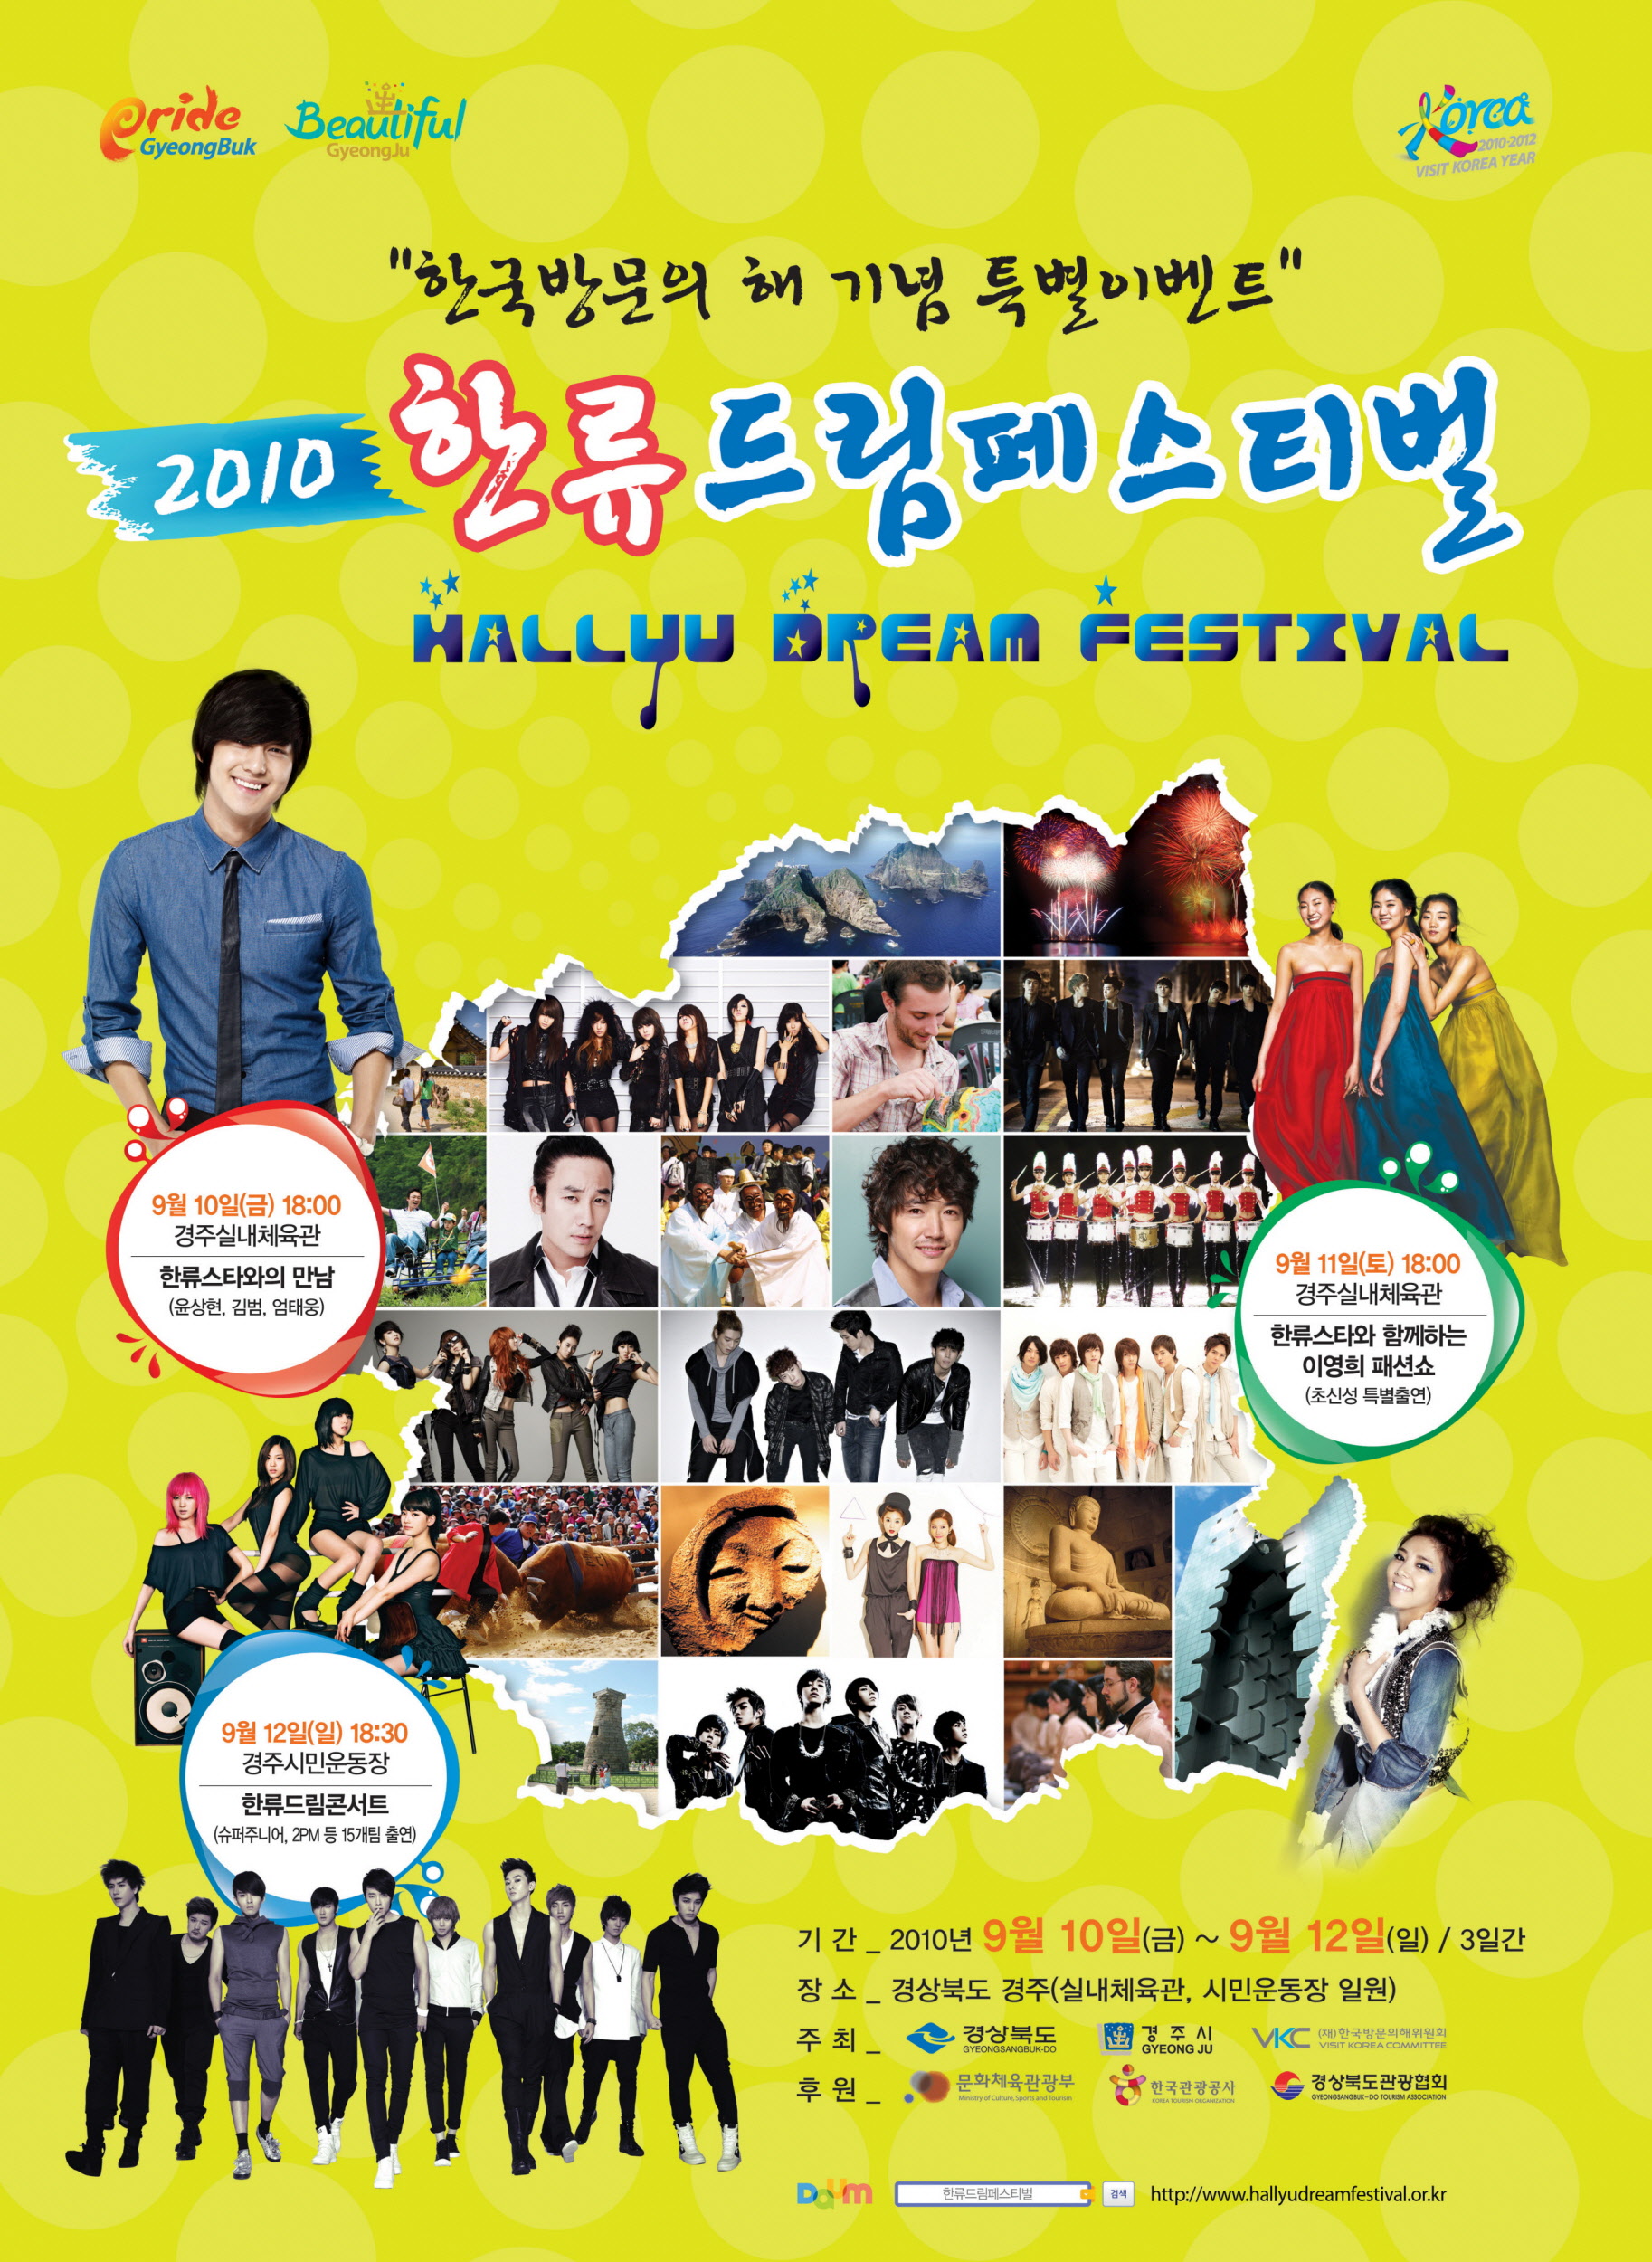 2010~2012 한국방문의 해 기념 특별이벤트 축제 ‘한류드림페스티벌’